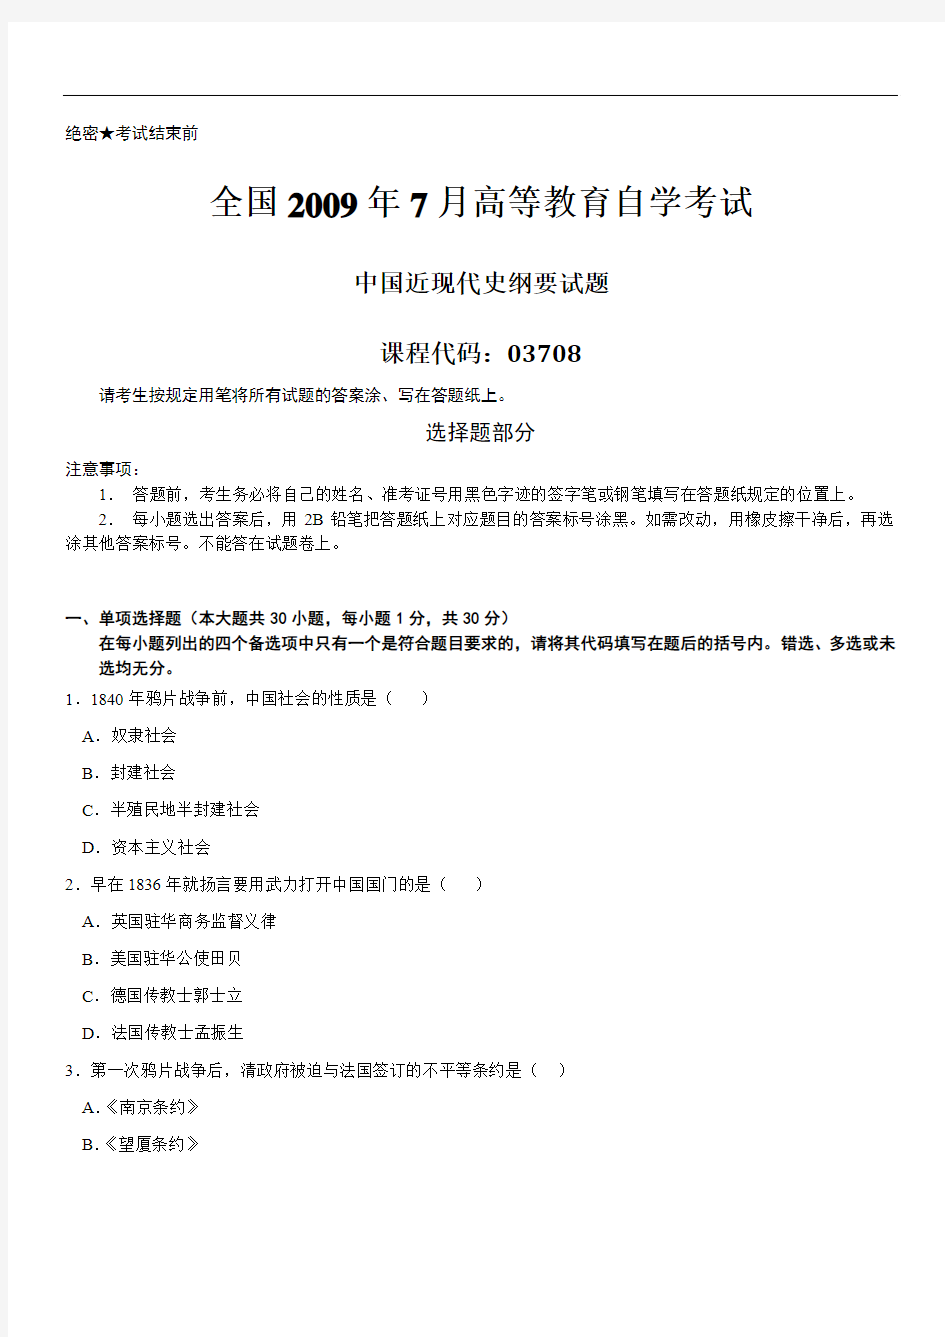 真题版2009年07月自学考试03708《中国近现代史纲要》历年真题